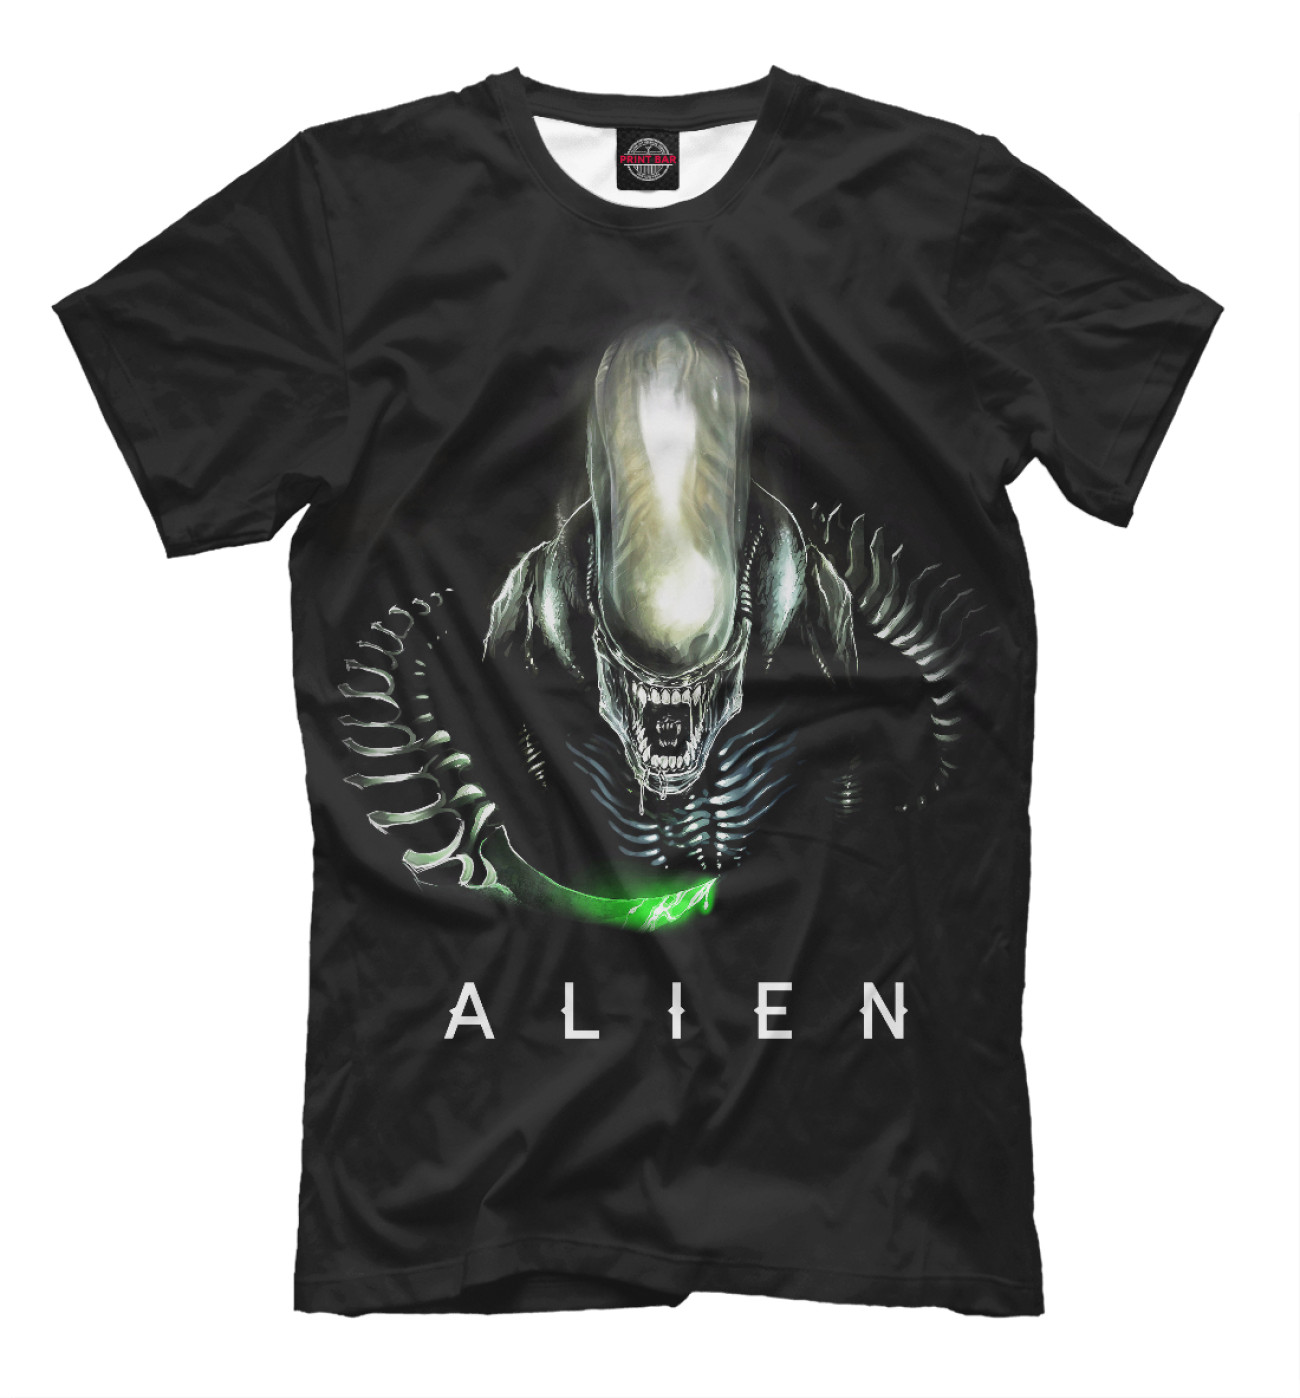 Мужская Футболка Alien, артикул: AIN-756413-fut-2